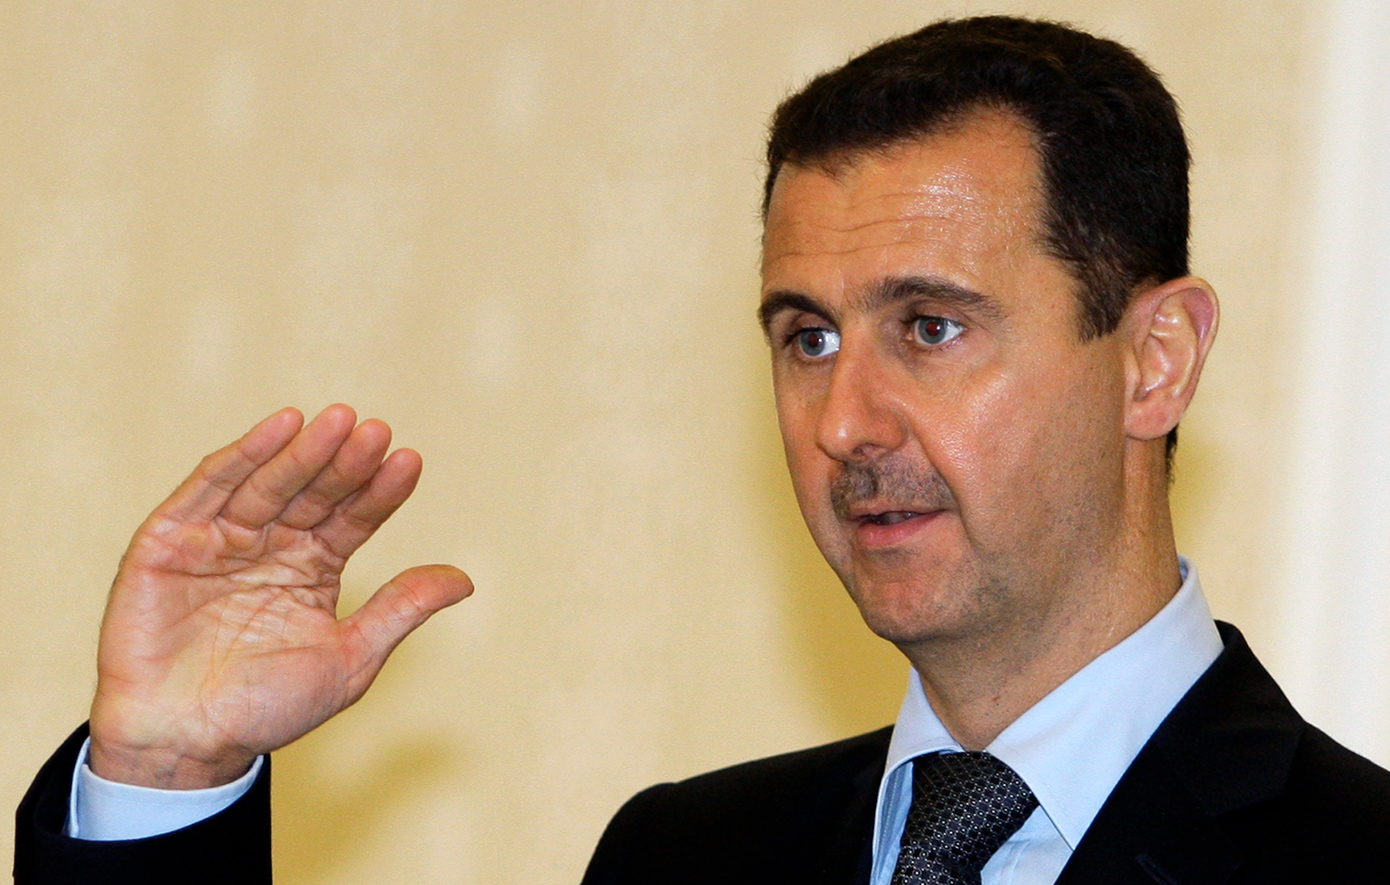 Σε δίκη για εγκλήματα πολέμου παραπέμπεται ο θείος του προέδρου της Συρίας Μπασάρ αλ Άσαντ